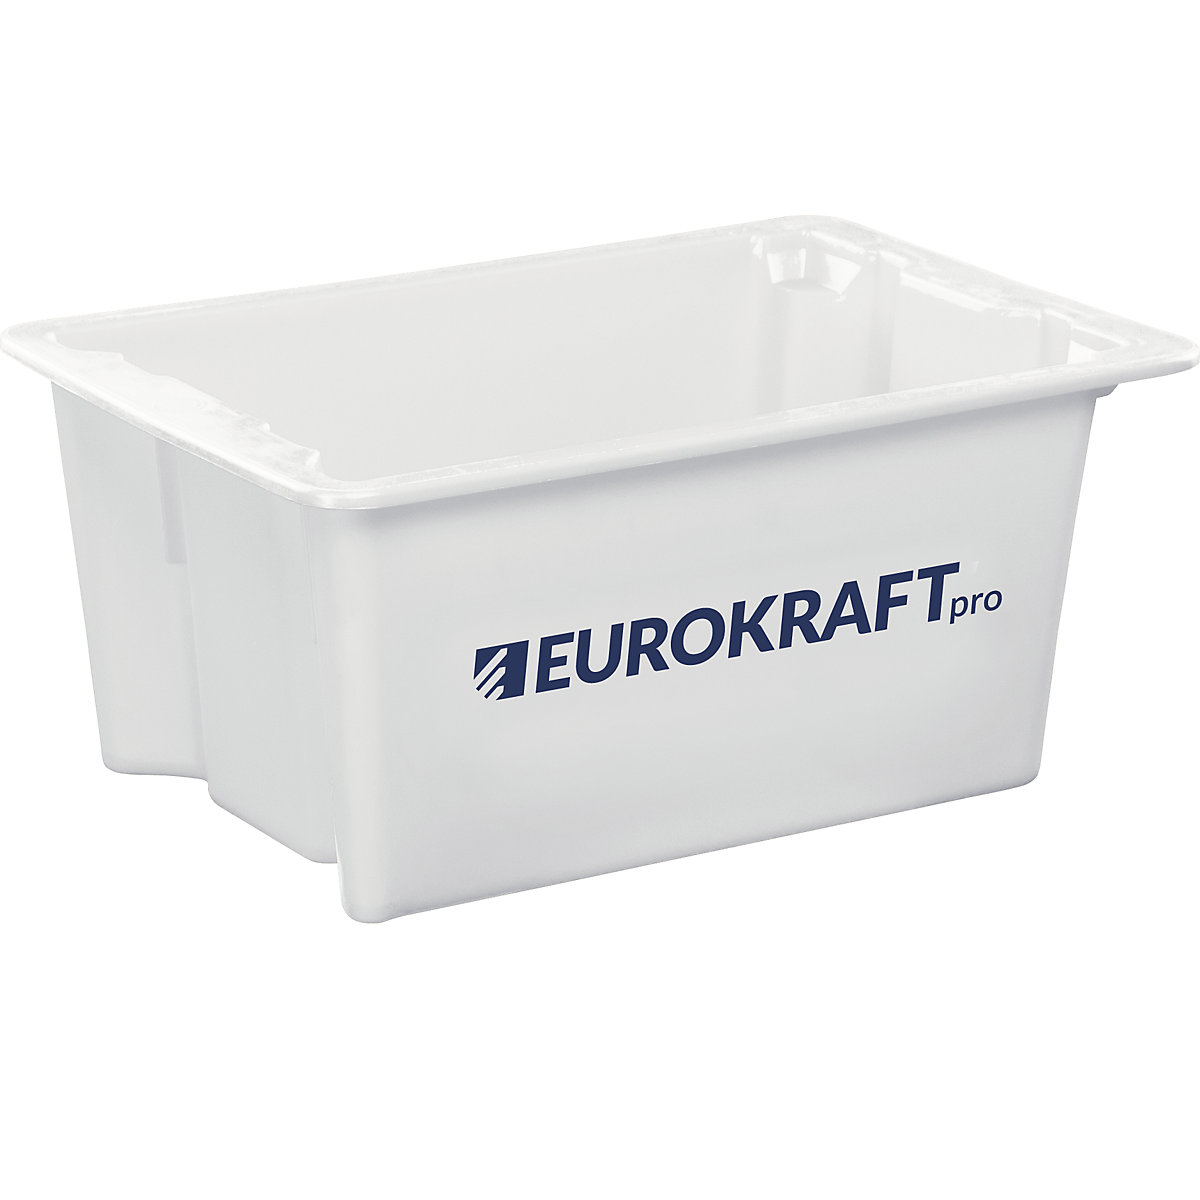 EUROKRAFTpro – Otočná stohovací nádoba z polypropylenu vhodného pro potraviny, obsah 6 litrů, bal.j. 4 ks, stěny a dno plné, přírodní